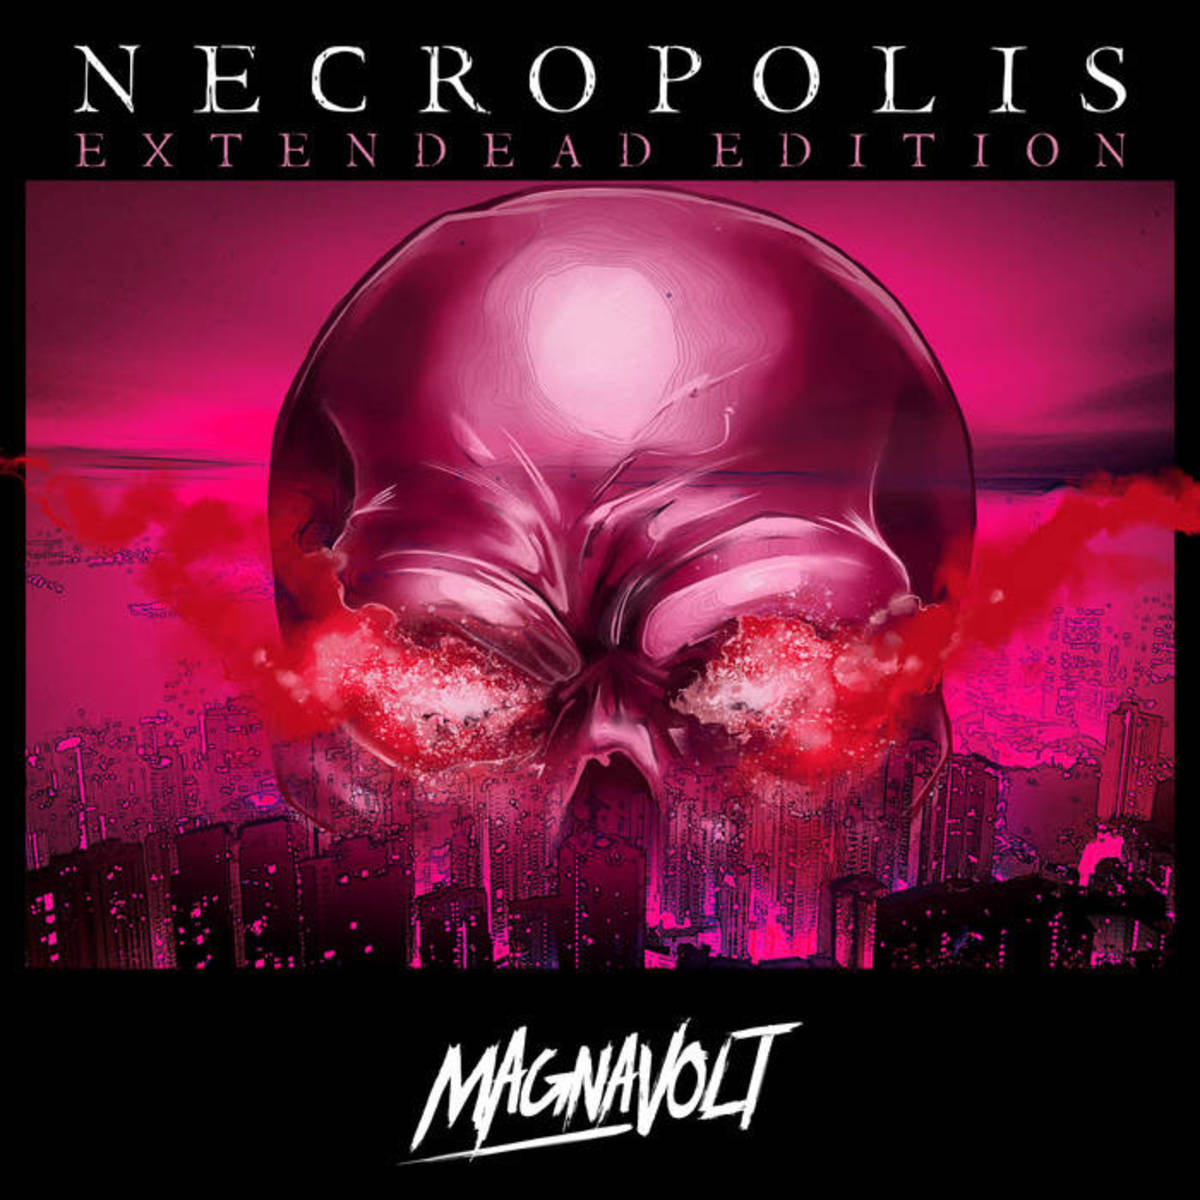 Album cover art for "Necropolis," by Magnavolt